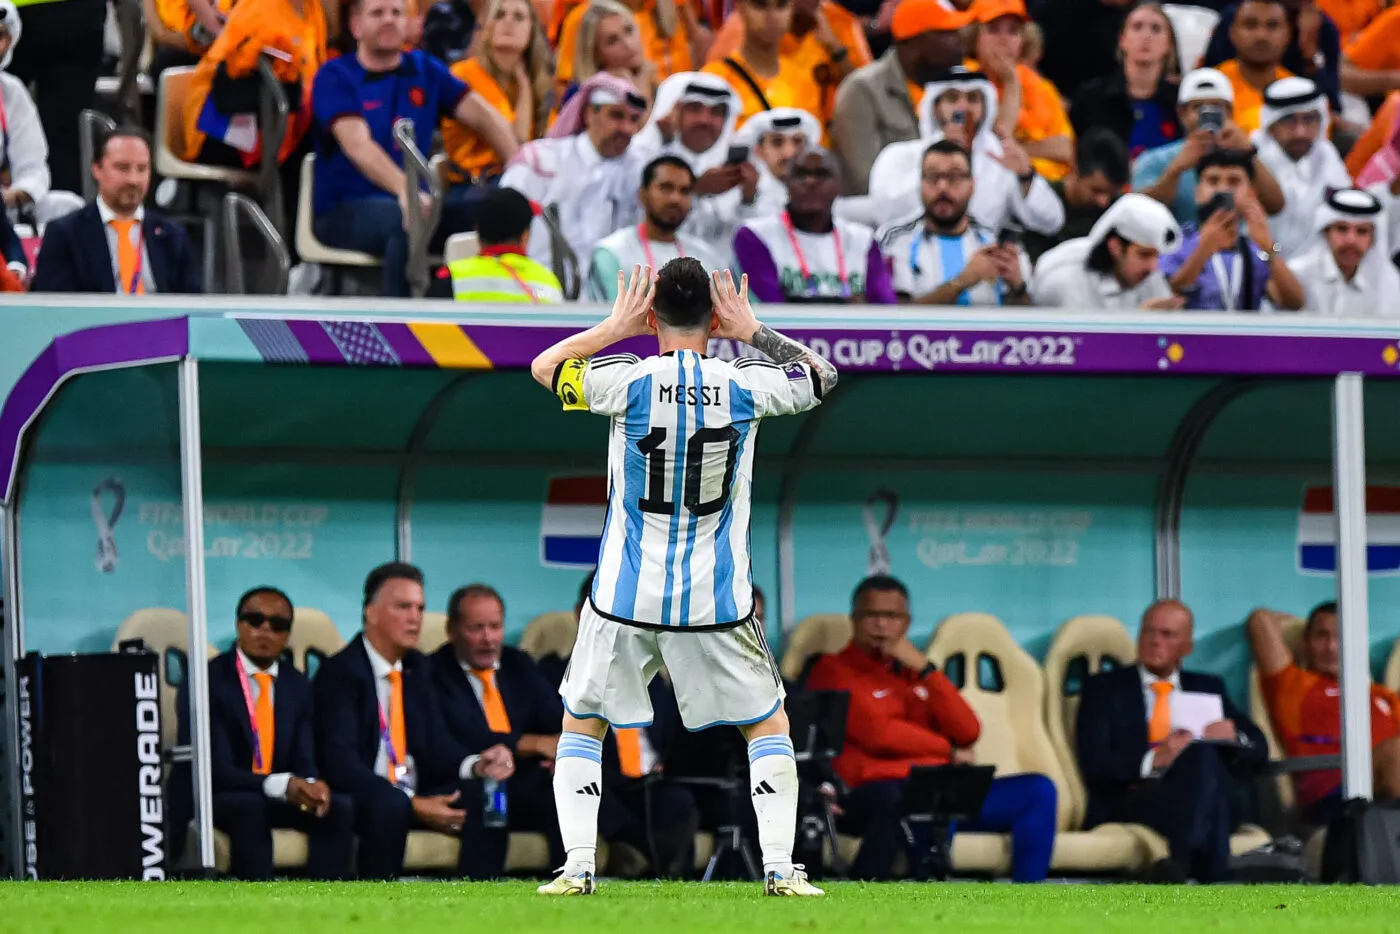 Pour Louis van Gaal, la victoire de l’Argentine en Coupe du monde était «<span style="font-size:50%">&nbsp;</span>préméditée<span style="font-size:50%">&nbsp;</span>»